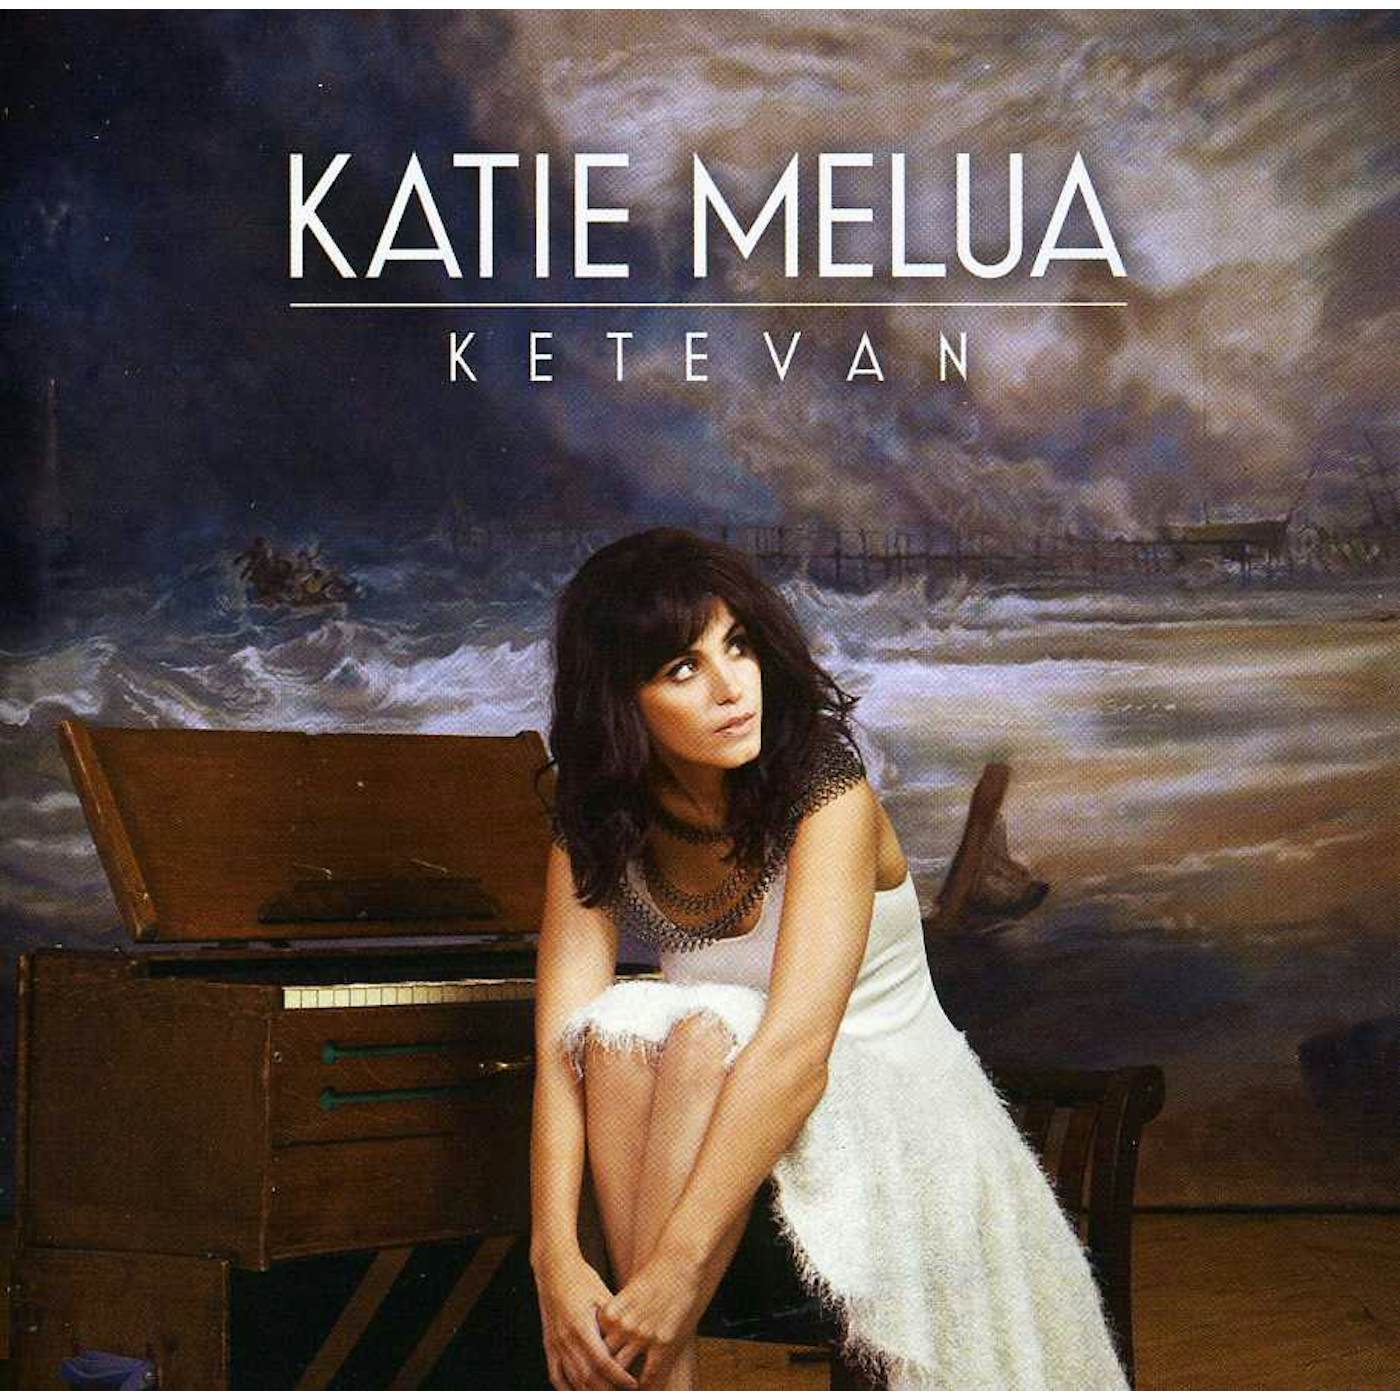 Katie Melua KETEVAN CD